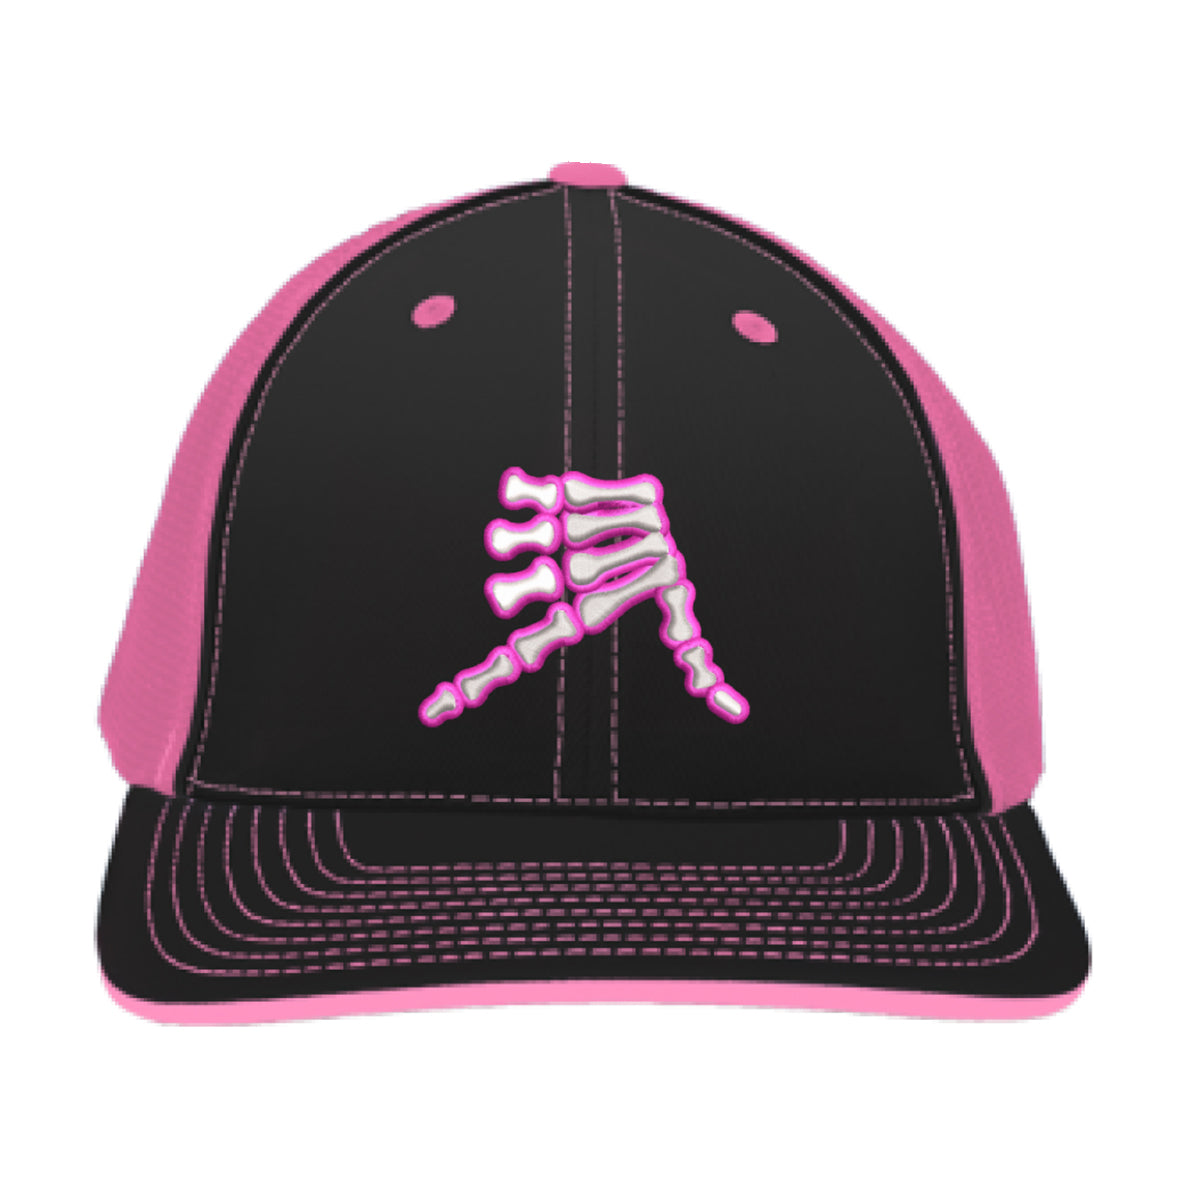 AkS Bones Trucker Hat in AkSportswear & Black Pink Neon –